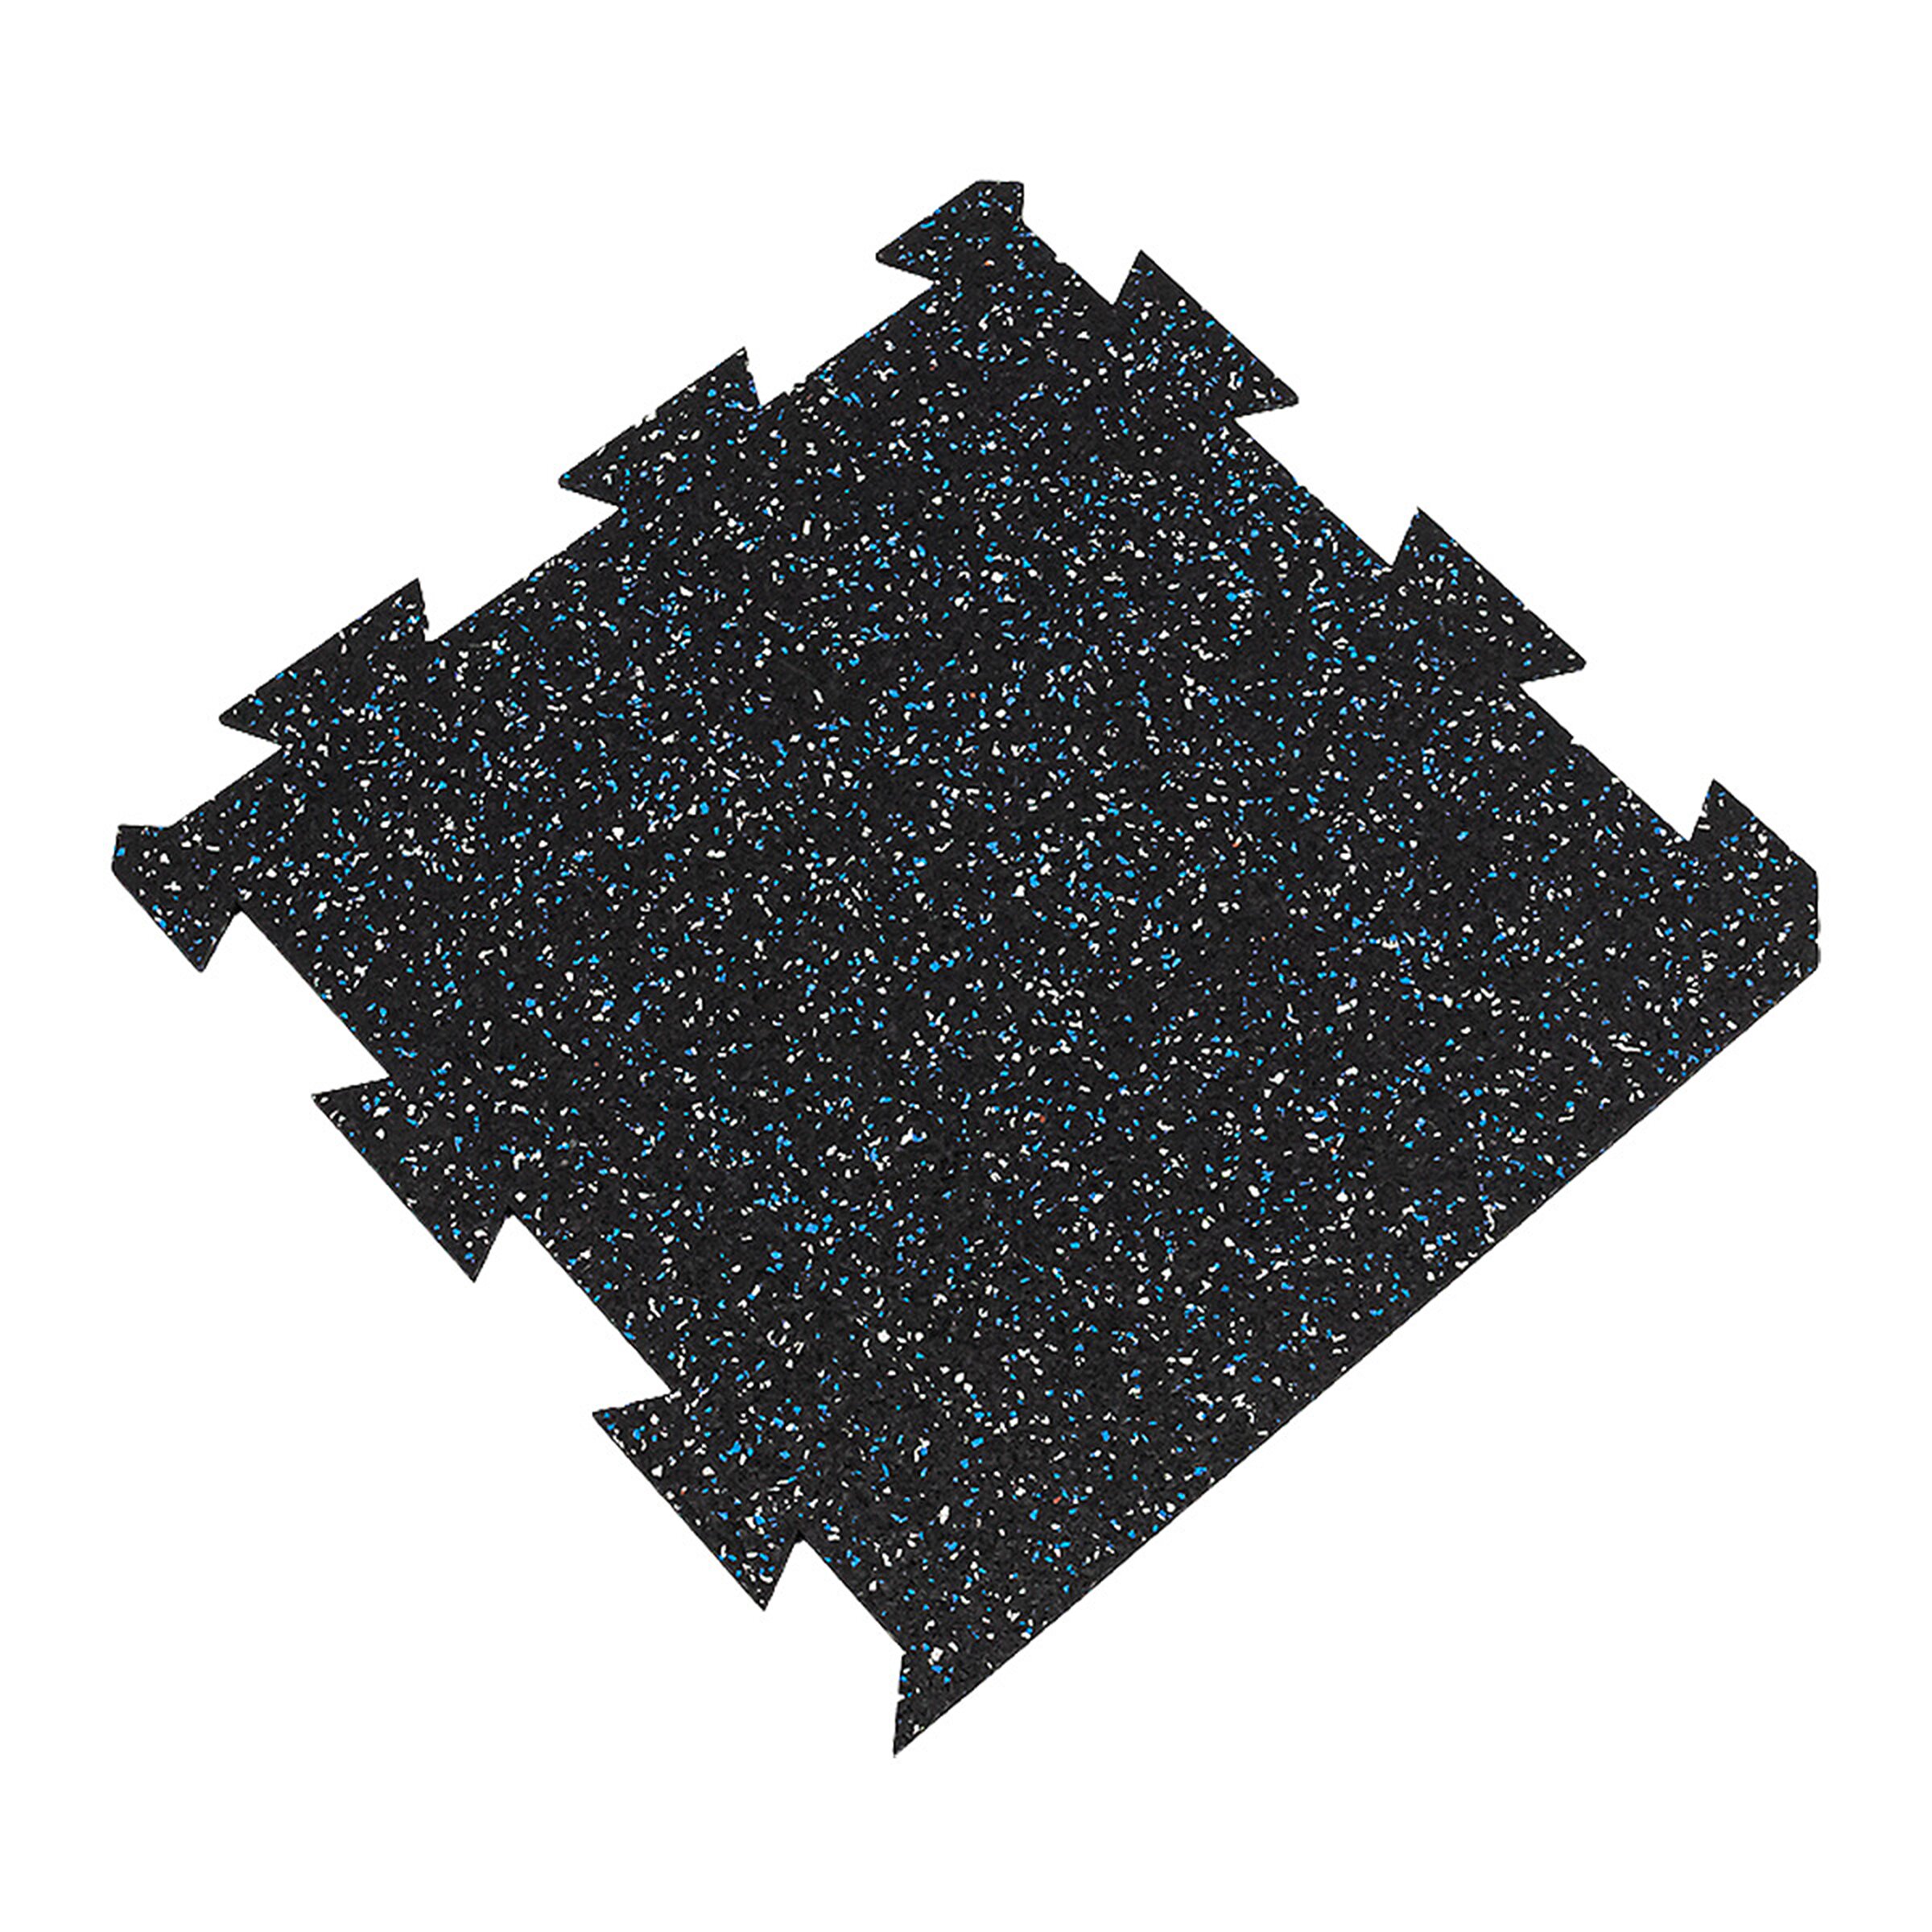 Černo-bílo-modrá gumová puzzle modulová dlažba FLOMA SF1050 FitFlo - délka 50 cm, šířka 50 cm, výška 0,8 cm